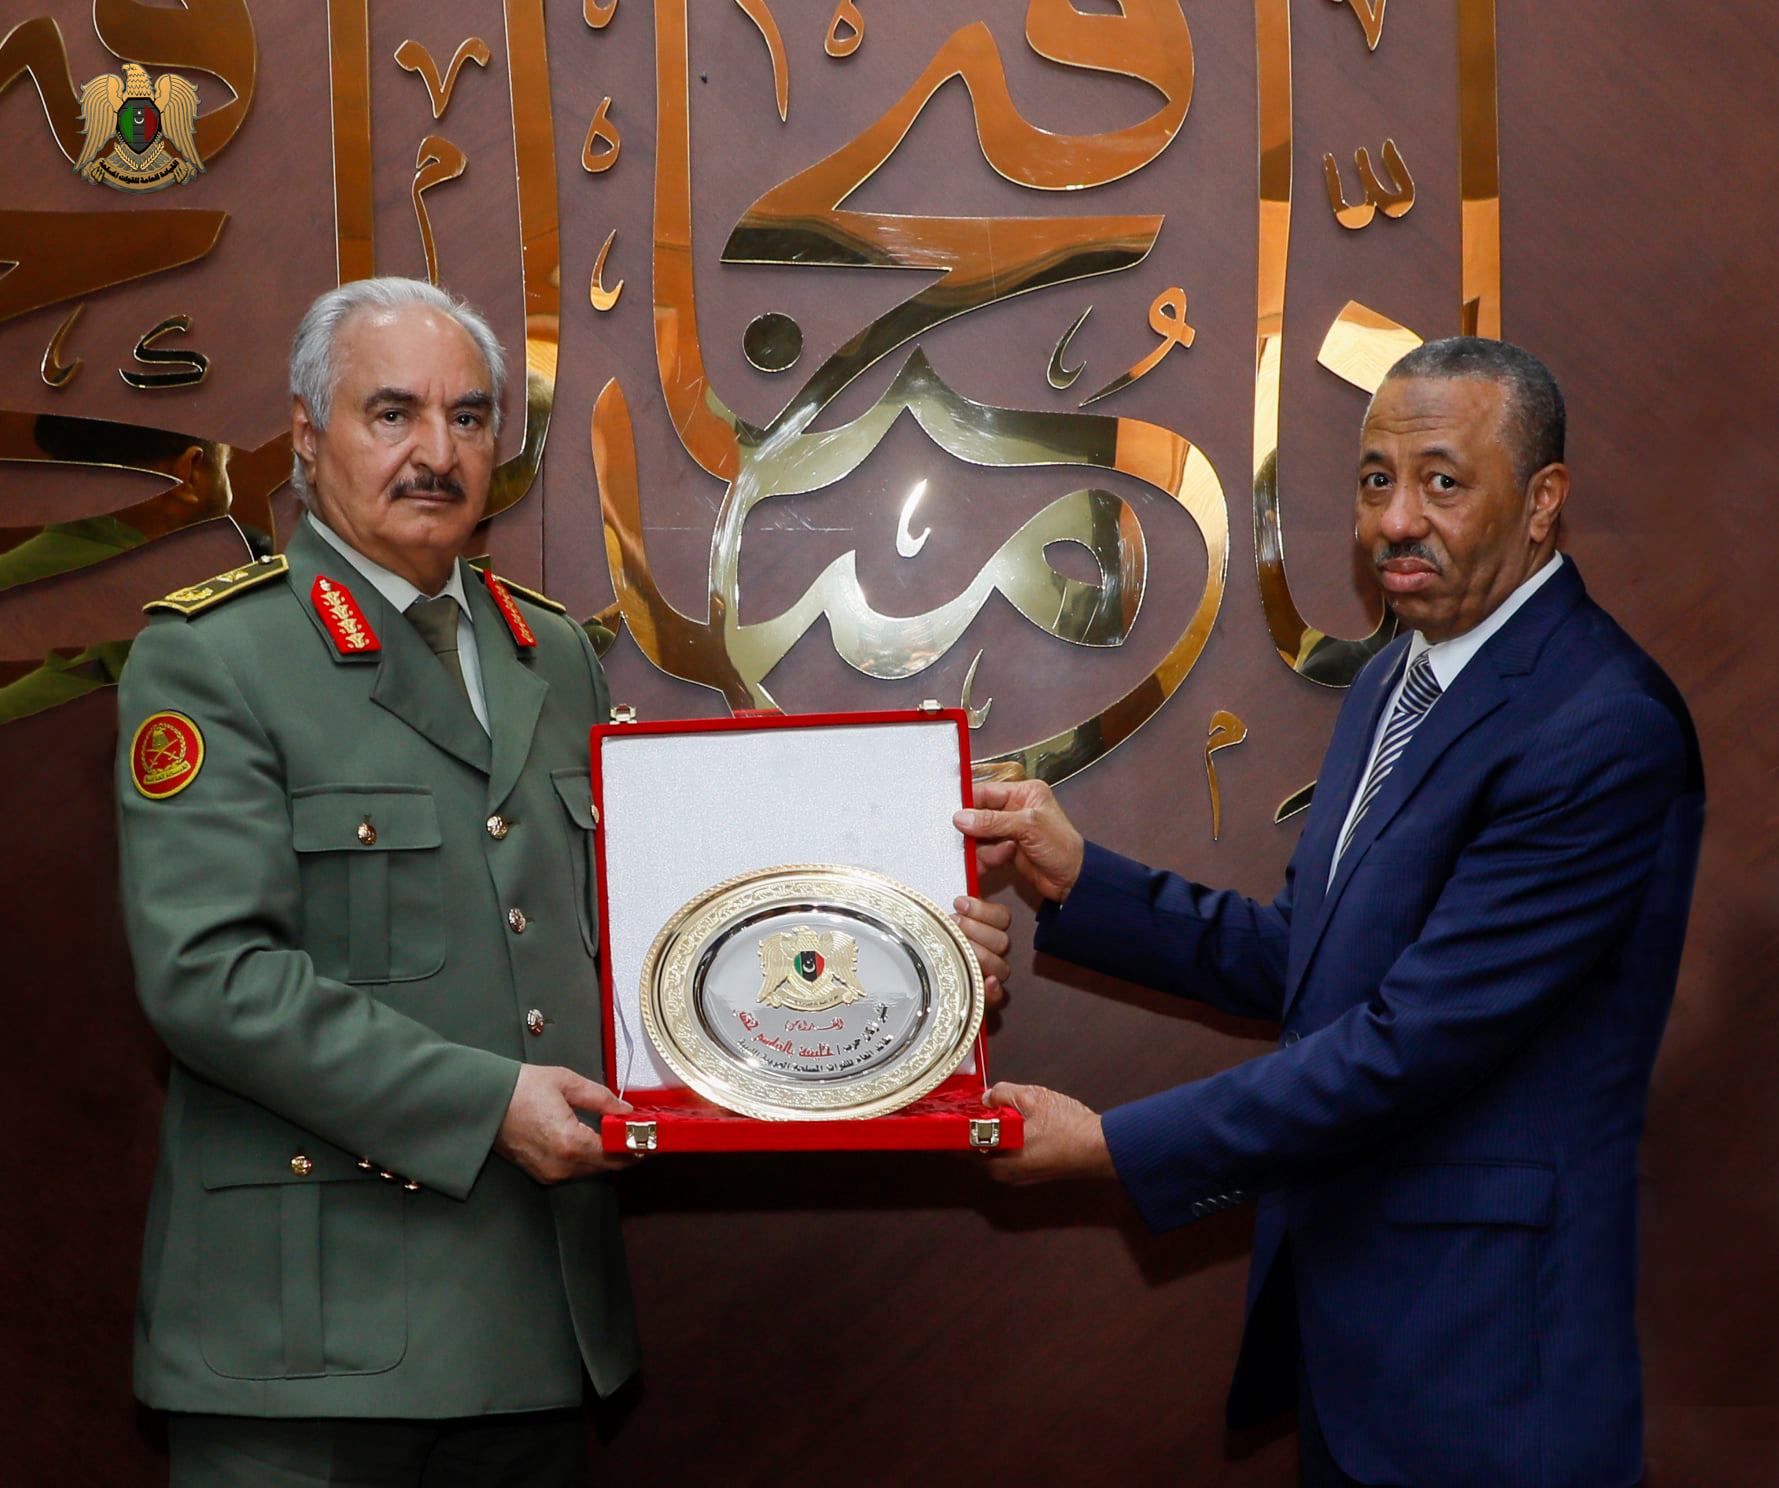 سيادة القائد العام المشير خليفة حفتر يُكرّم السيد رئيس الحكومة الليبية عبد الله الثني